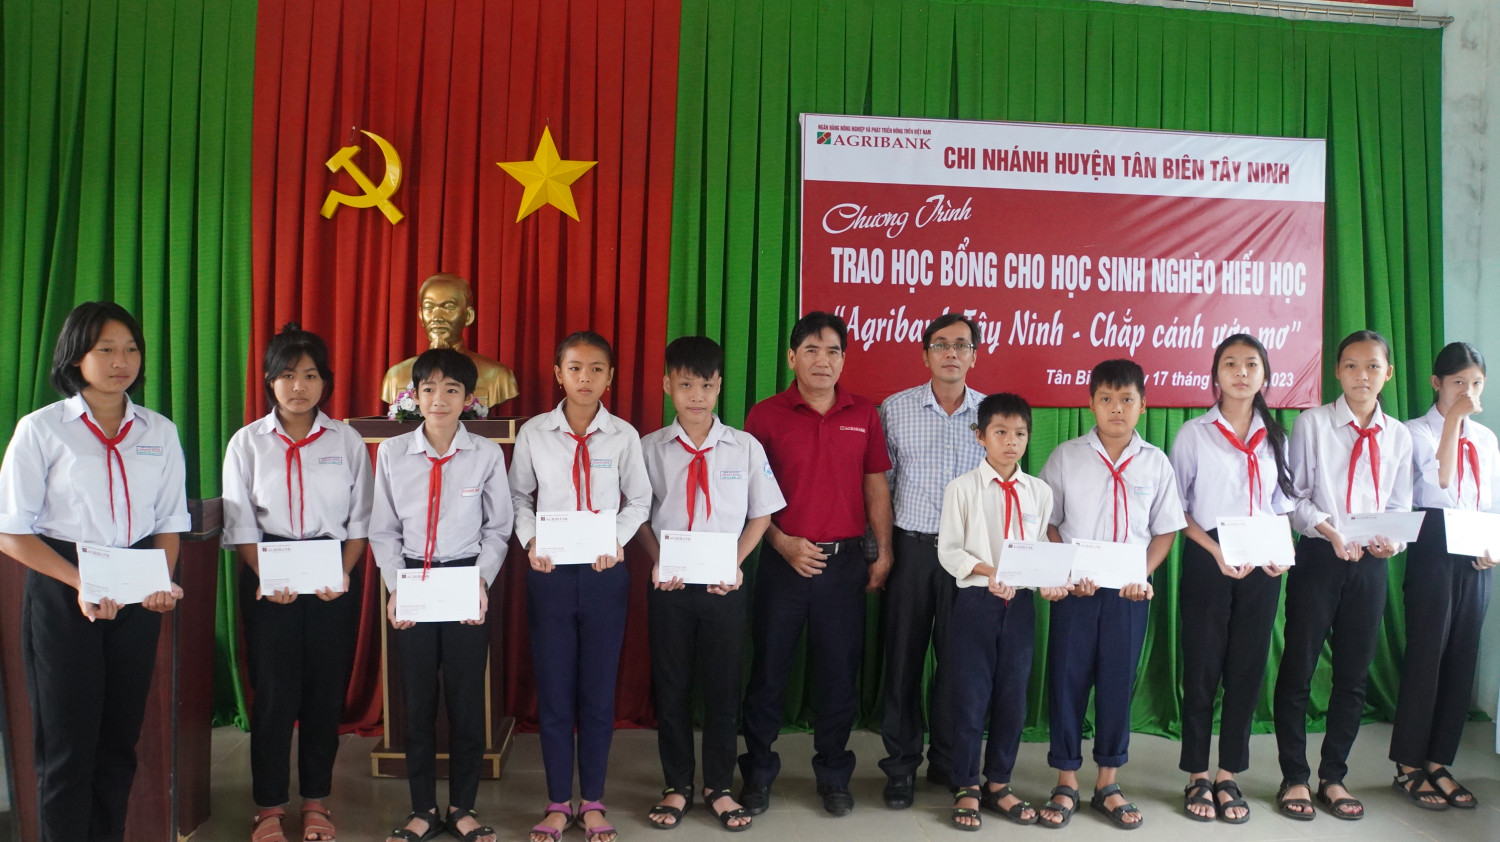 Tân Biên: Ngân hàng Nông nghiệp và Phát triển nông thôn chi nhánh Tân Biên tổ chức chương trình trao học bổng “Agribank Tây Ninh – Chắp cánh ước mơ”